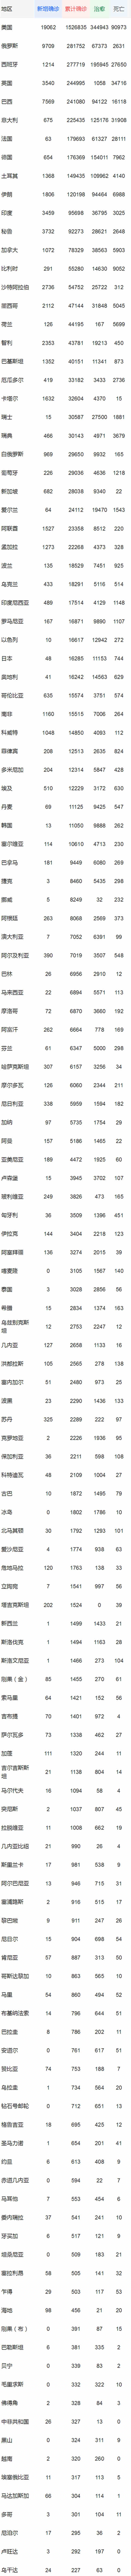 中国以外新冠确诊病例达4441013例